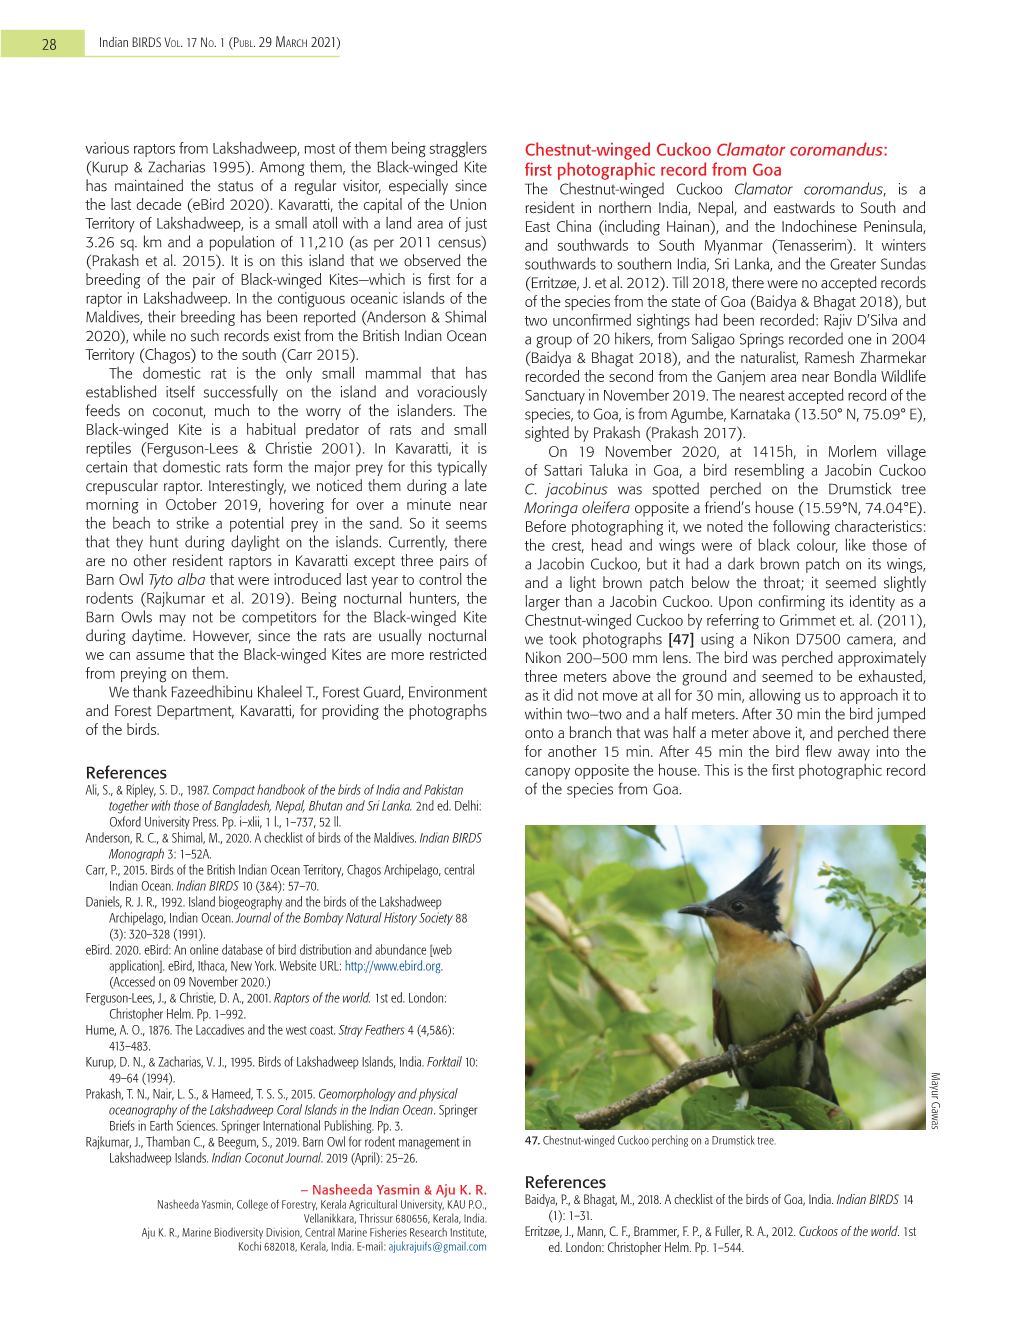 Chestnut-Winged Cuckoo Clamator Coromandus: (Kurup & Zacharias 1995)